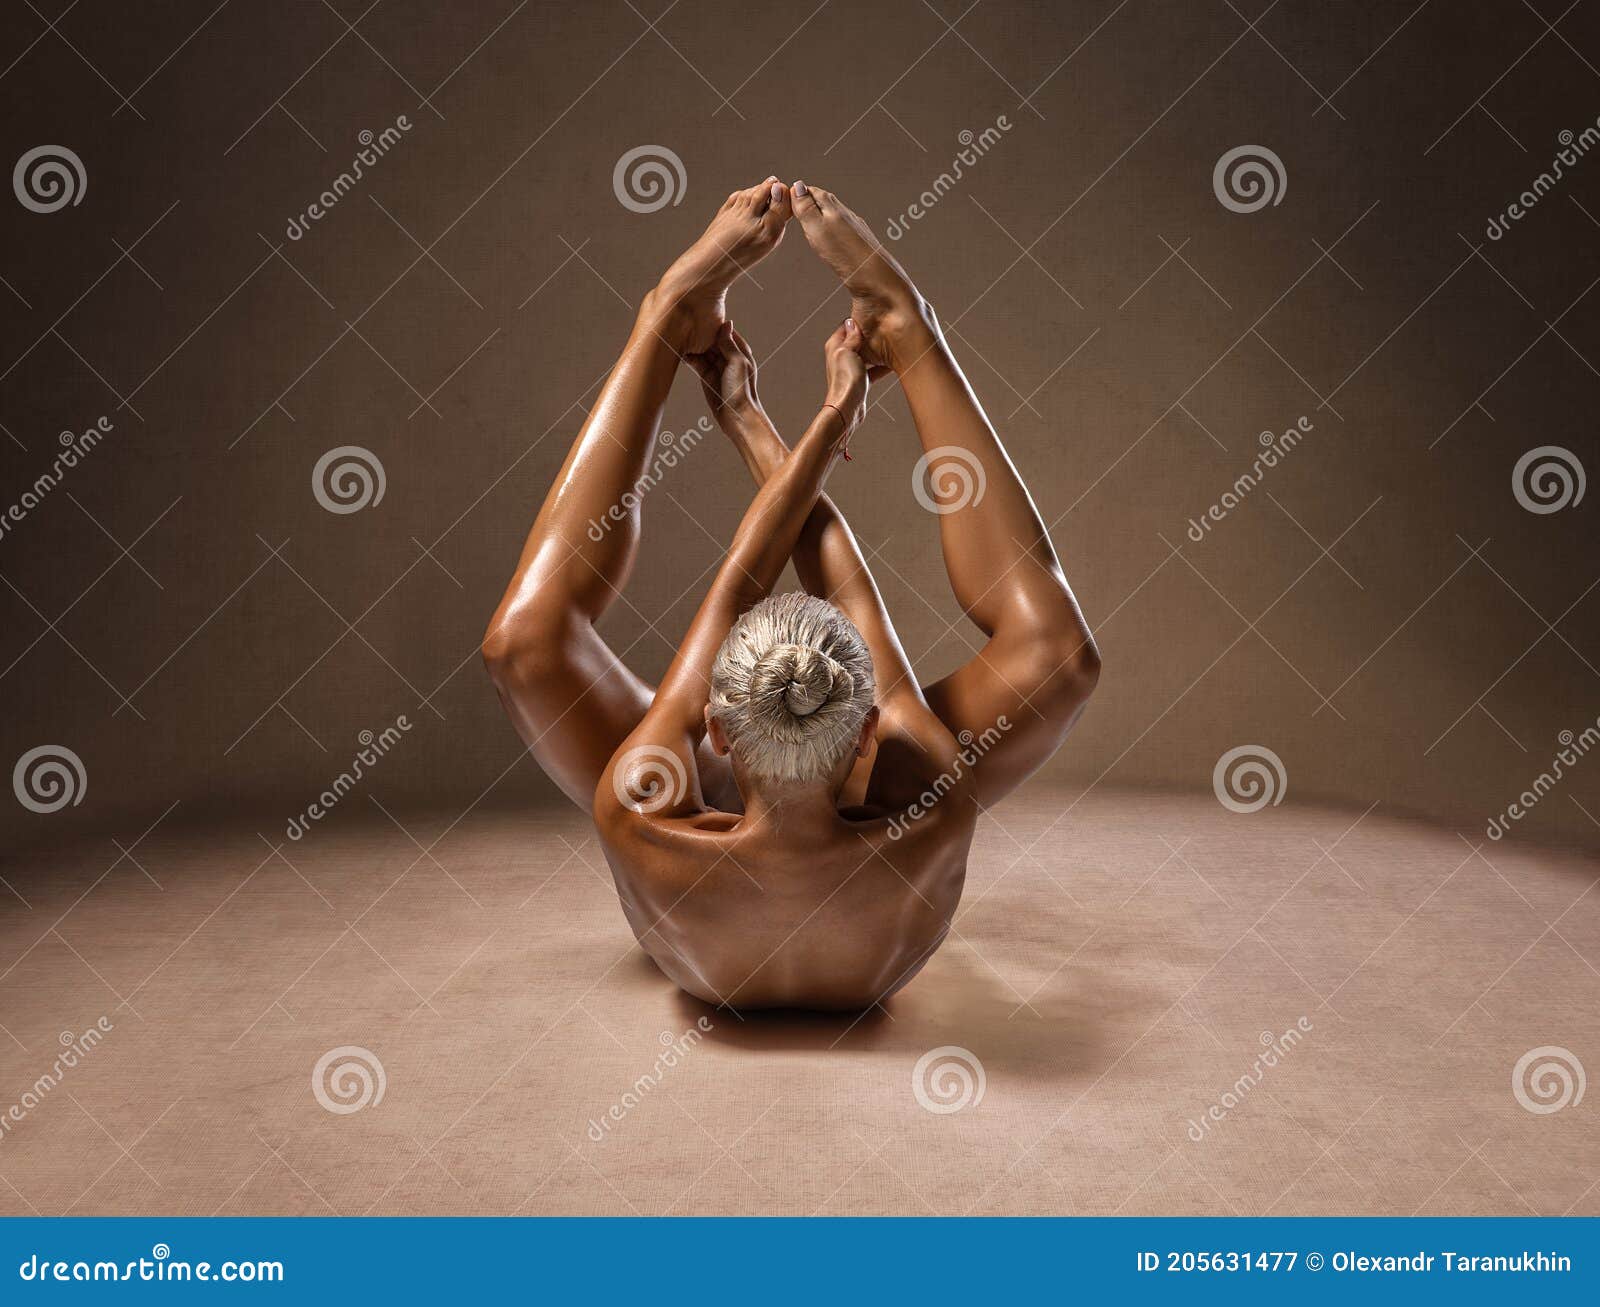 285 Yoga Desnuda Fotos de stock - Fotos libres de regalías de Dreamstime